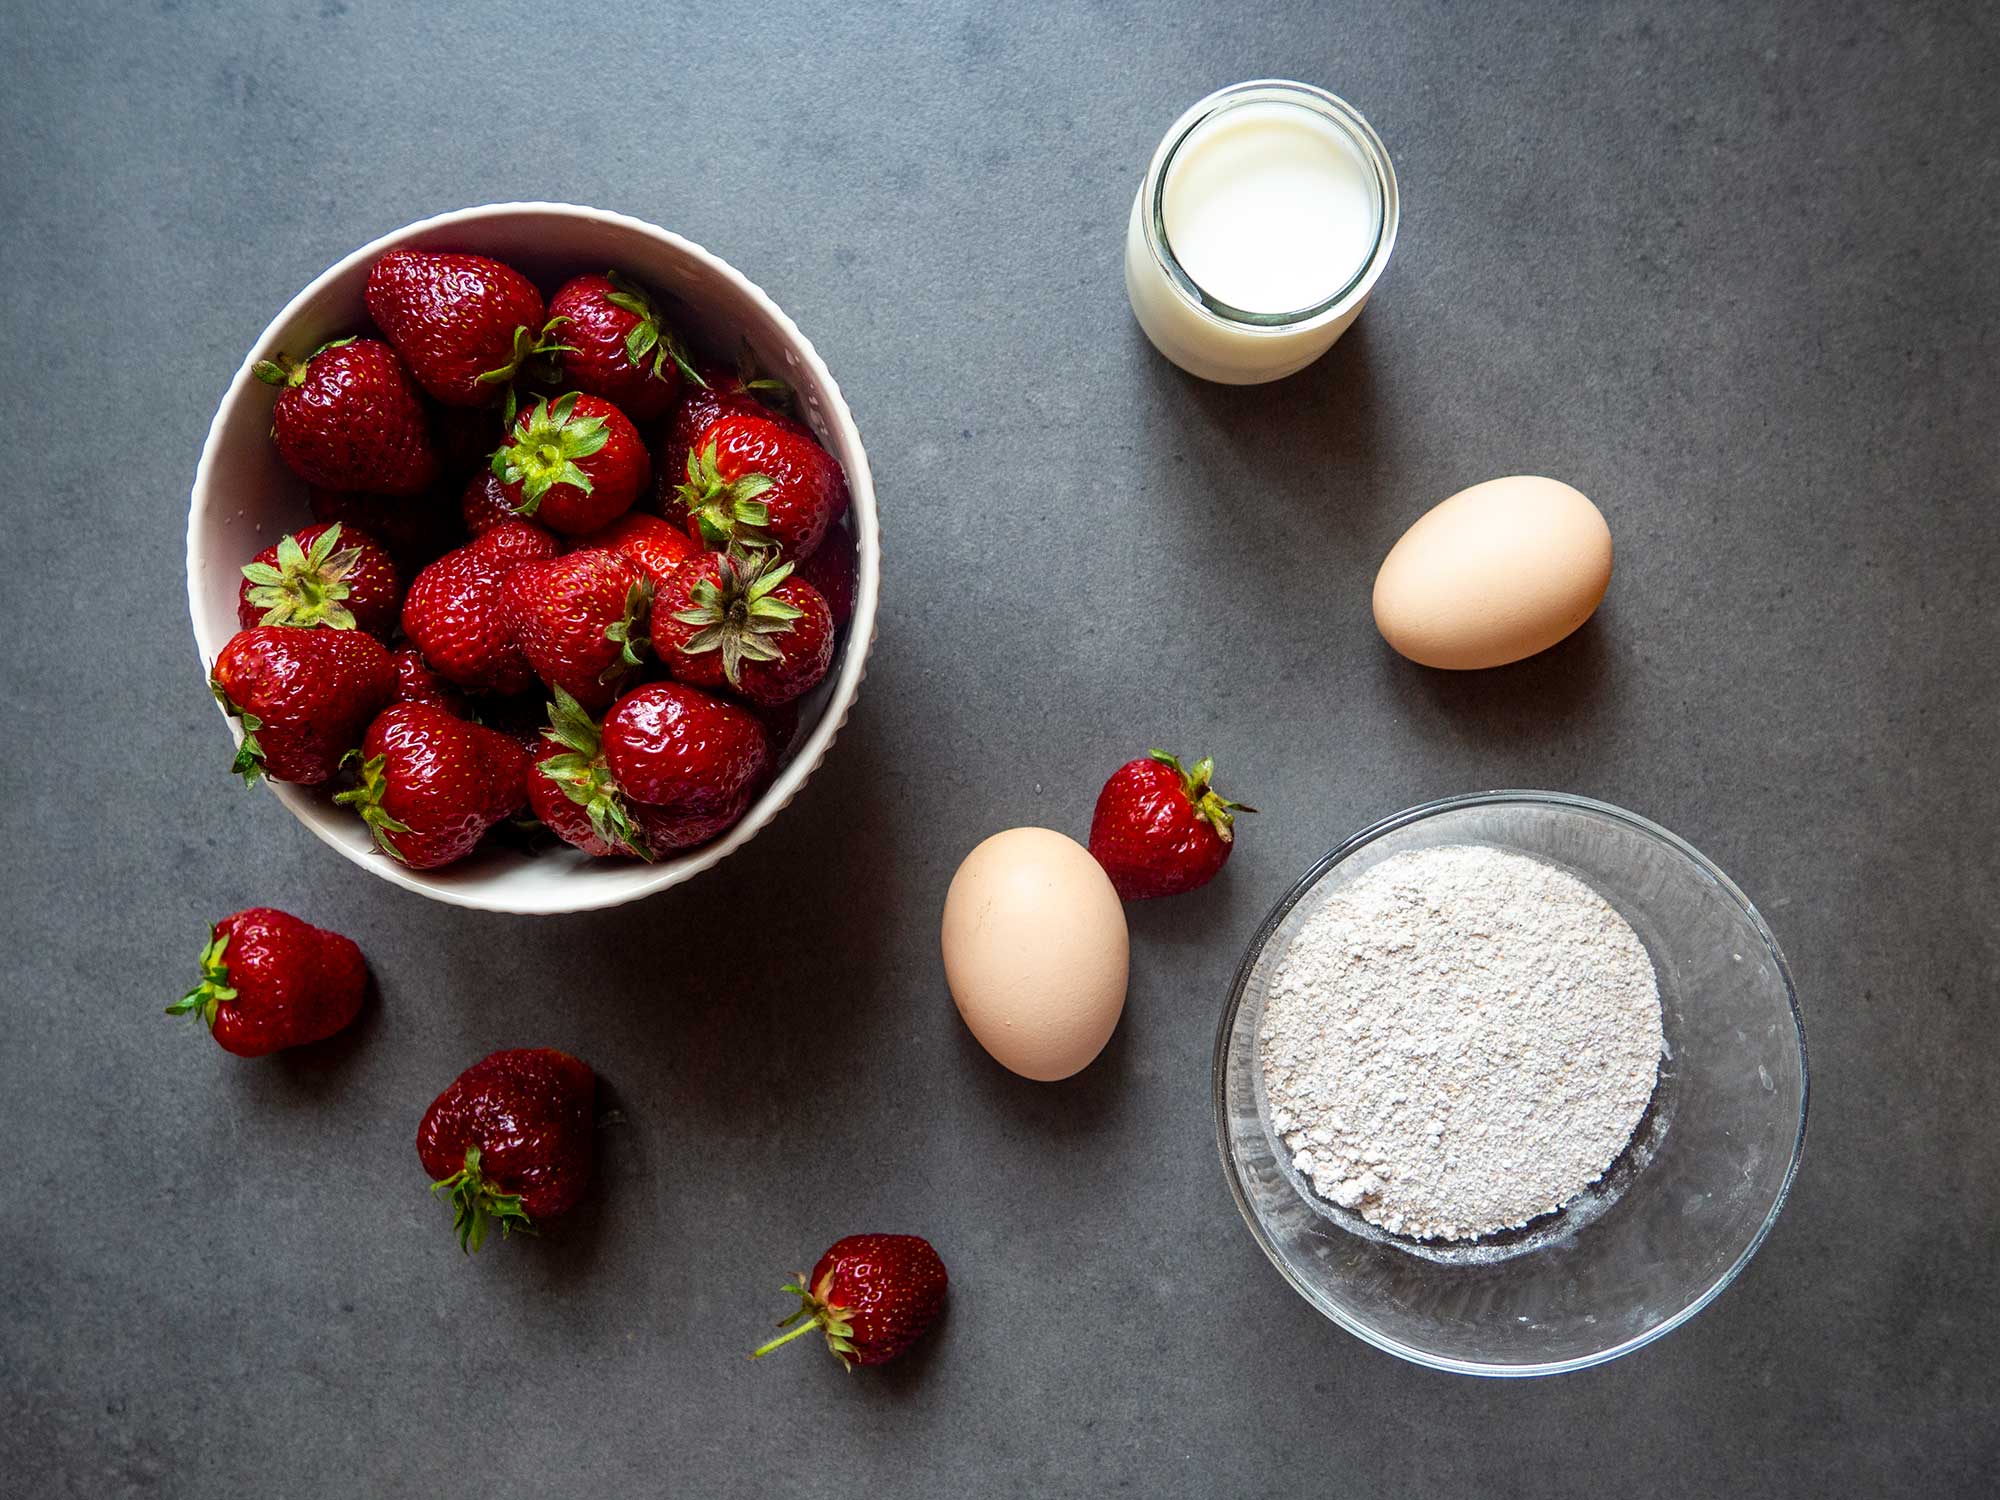 Clean strawberries